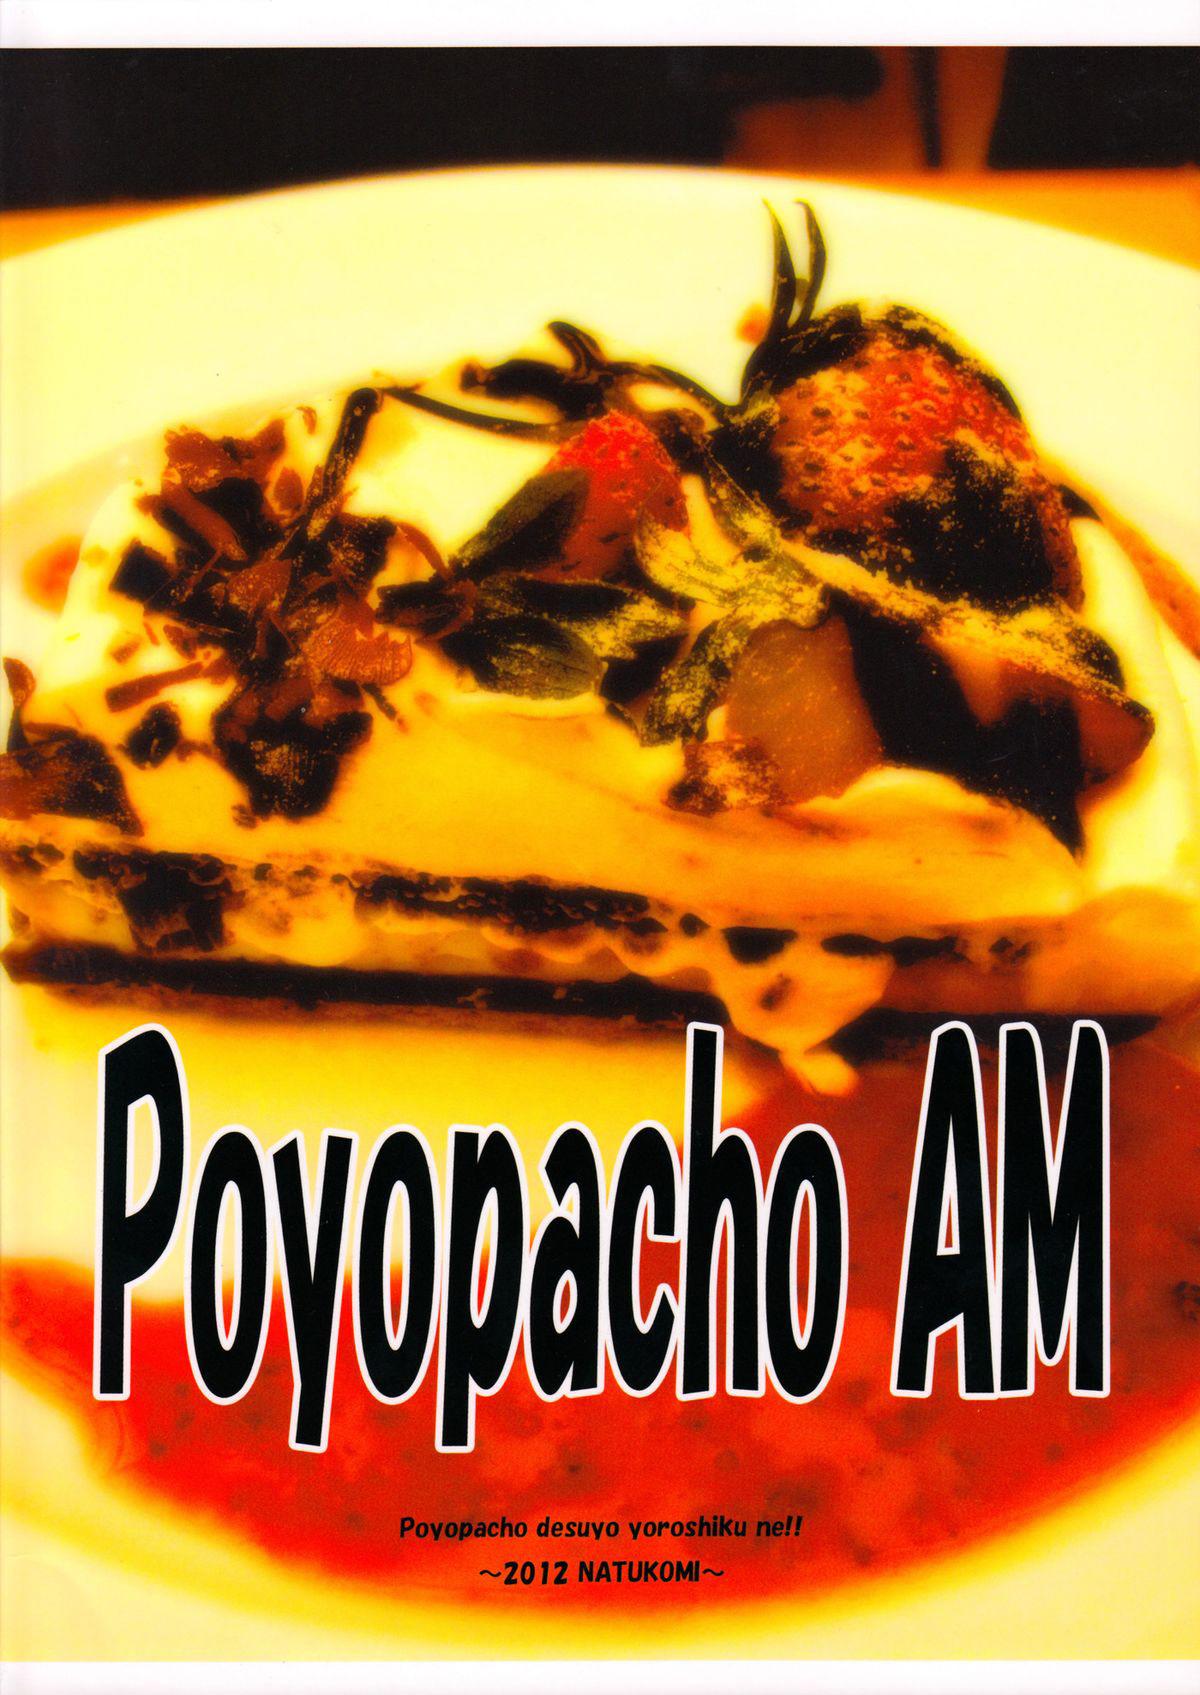 Poyopacho AM 20